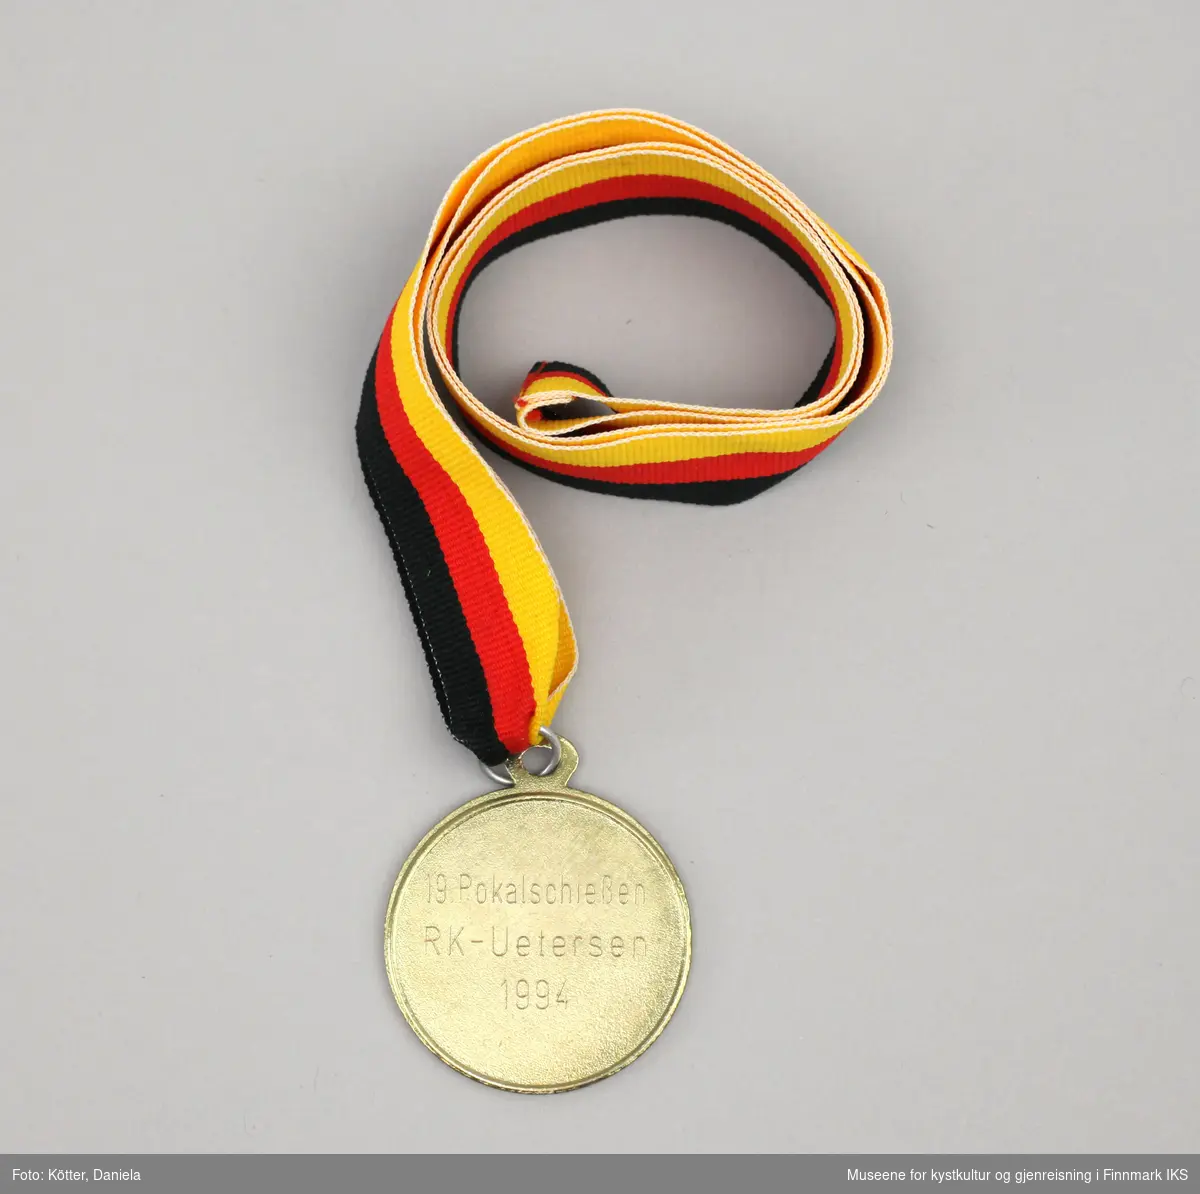 Medaljen er rund og i gull valør. På forsiden er det en kant med eikeløv. Merket i midten viser en pistol og en målskive. På baksiden er det gravert inn anledningen medaljen er vunnet til, en skytekonkurranse i Nord-Tyskland ved Reservistkammeratskapet i Uetersen i 1994.
Medaljen henger i et bånd i de tyske nasjonalfargene svart, rød og gull.